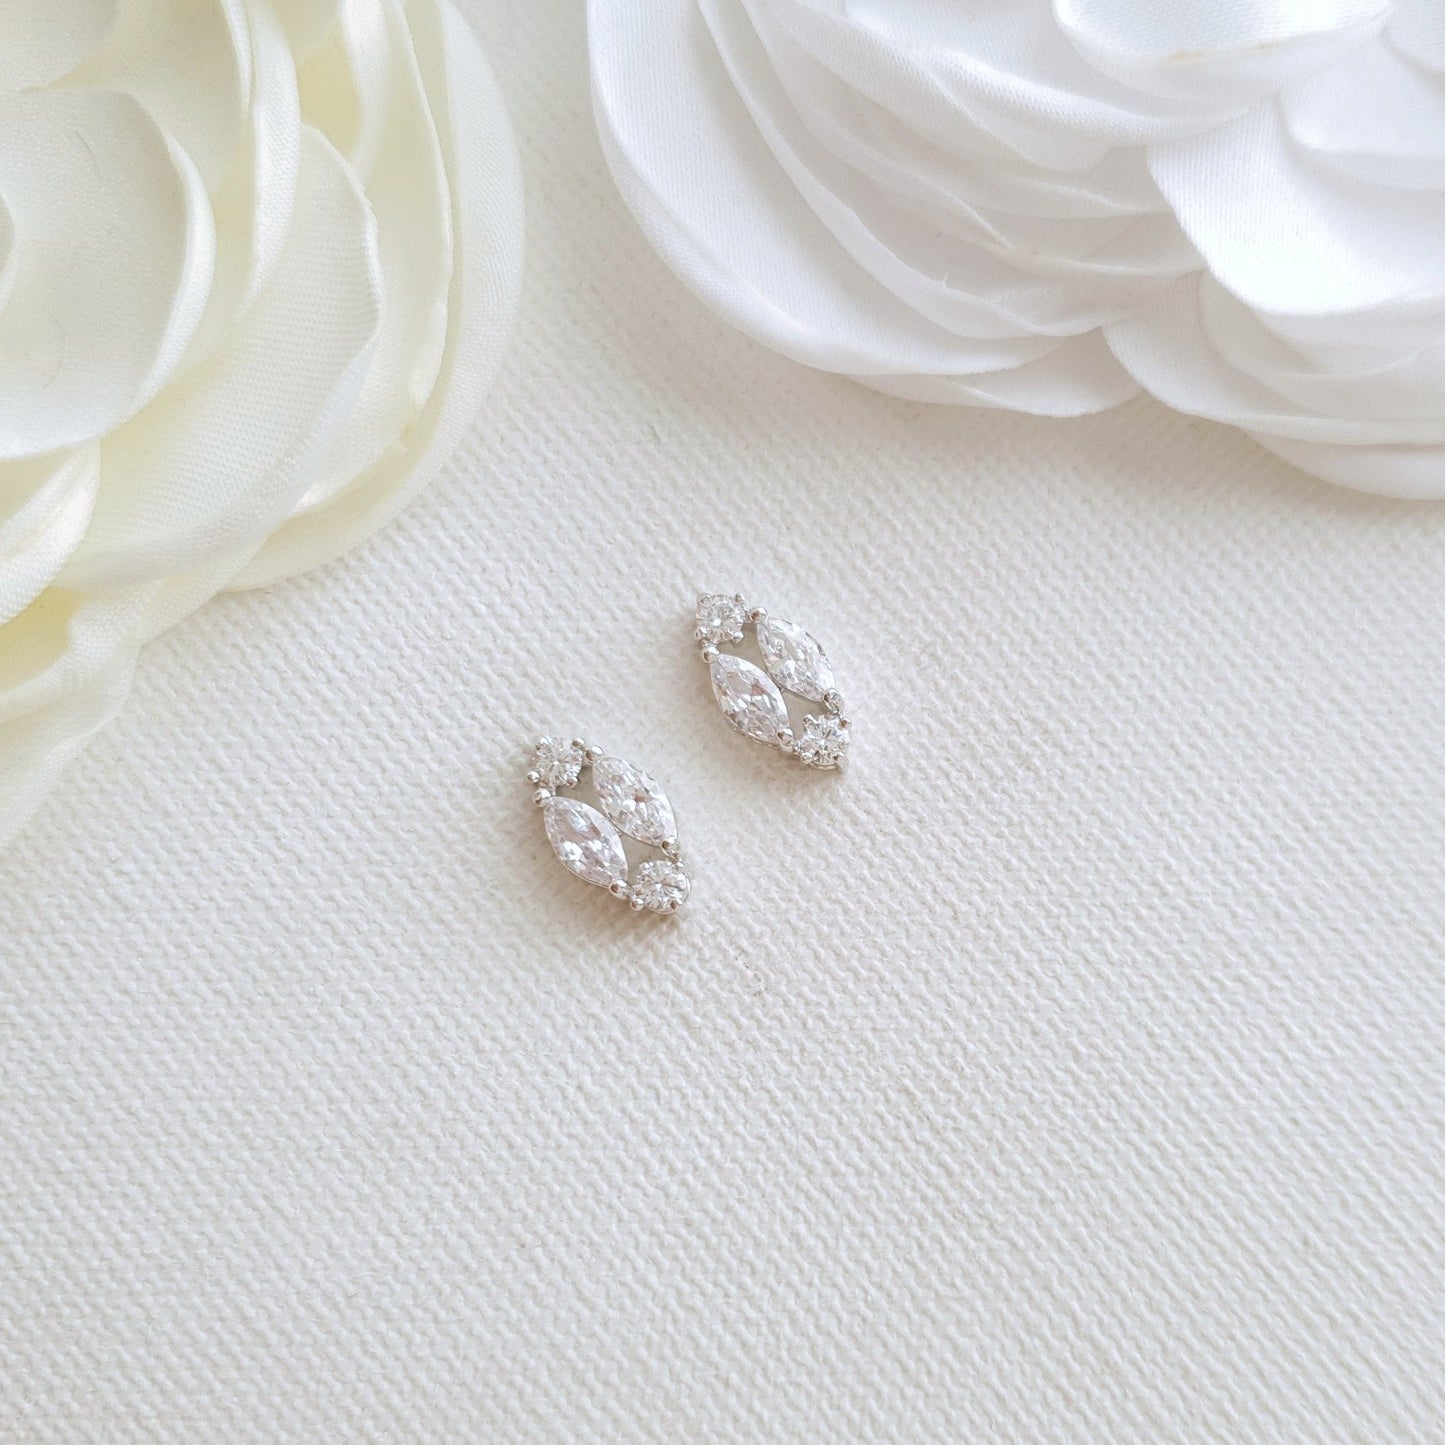 Cute Rose Gold Diamond Shaped Stud Earrings-Hayley - PoetryDesigns